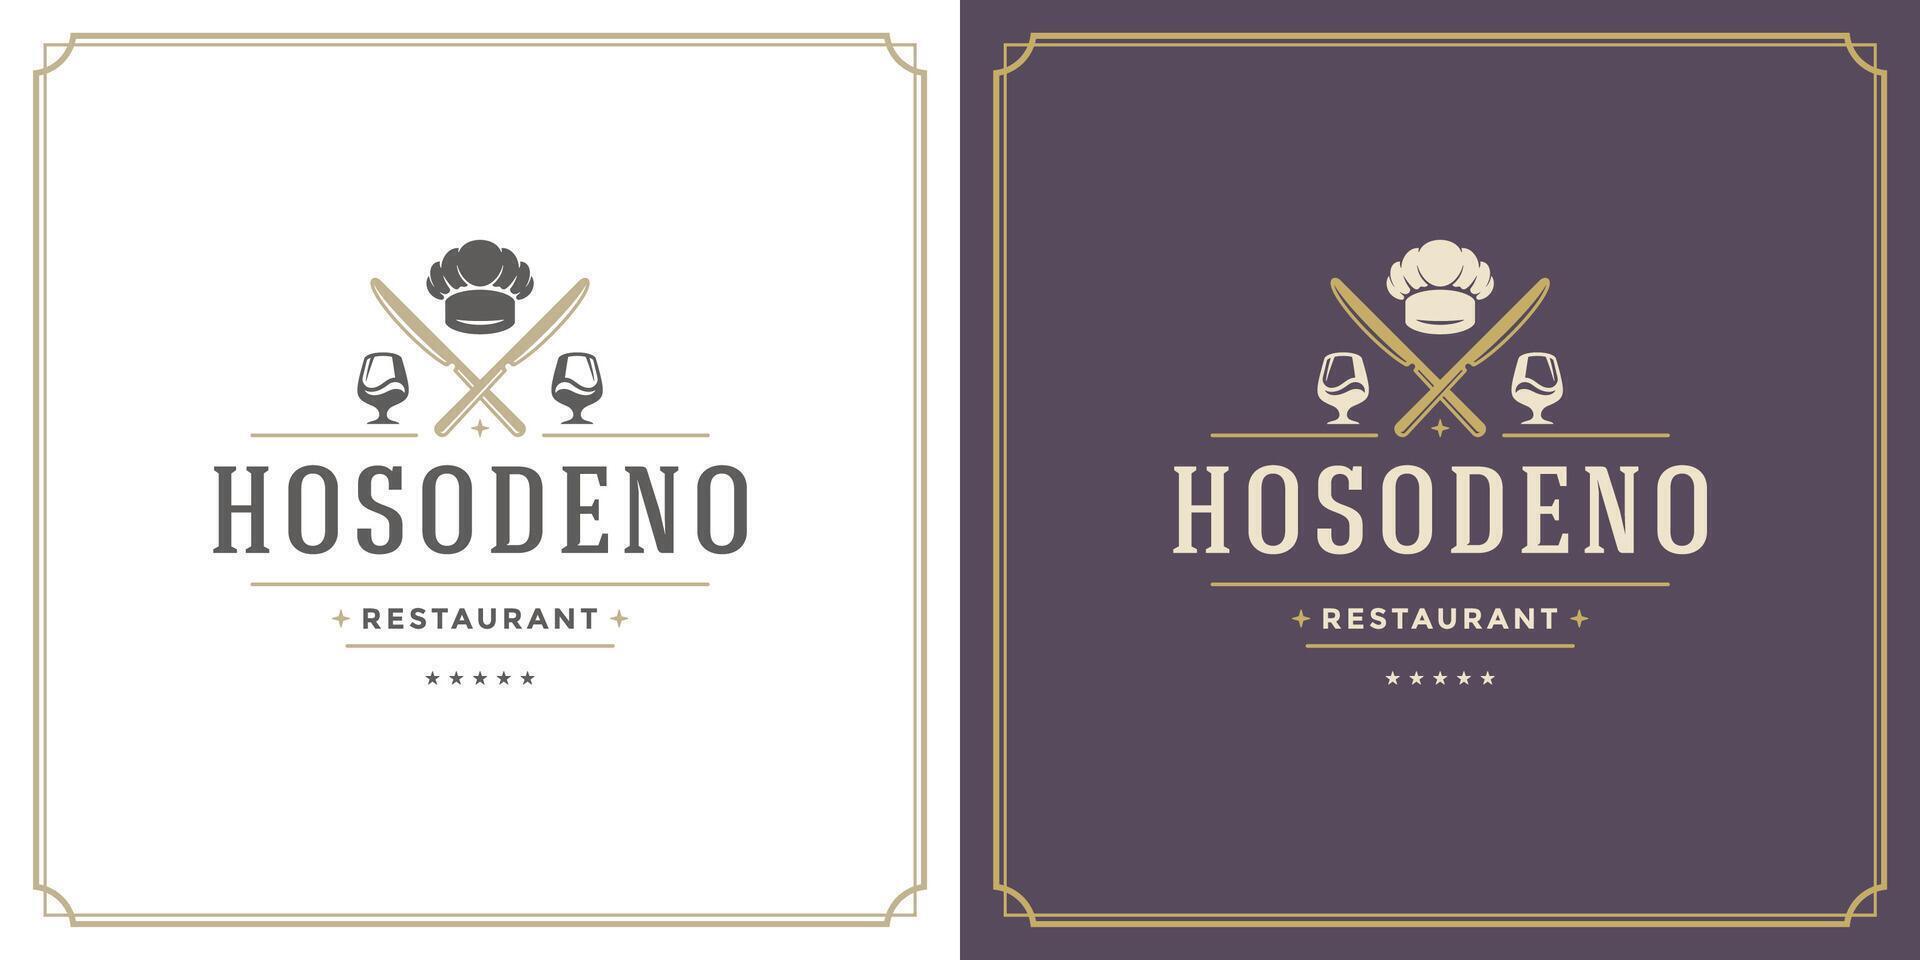 restaurante logo modelo ilustración para menú y café firmar vector